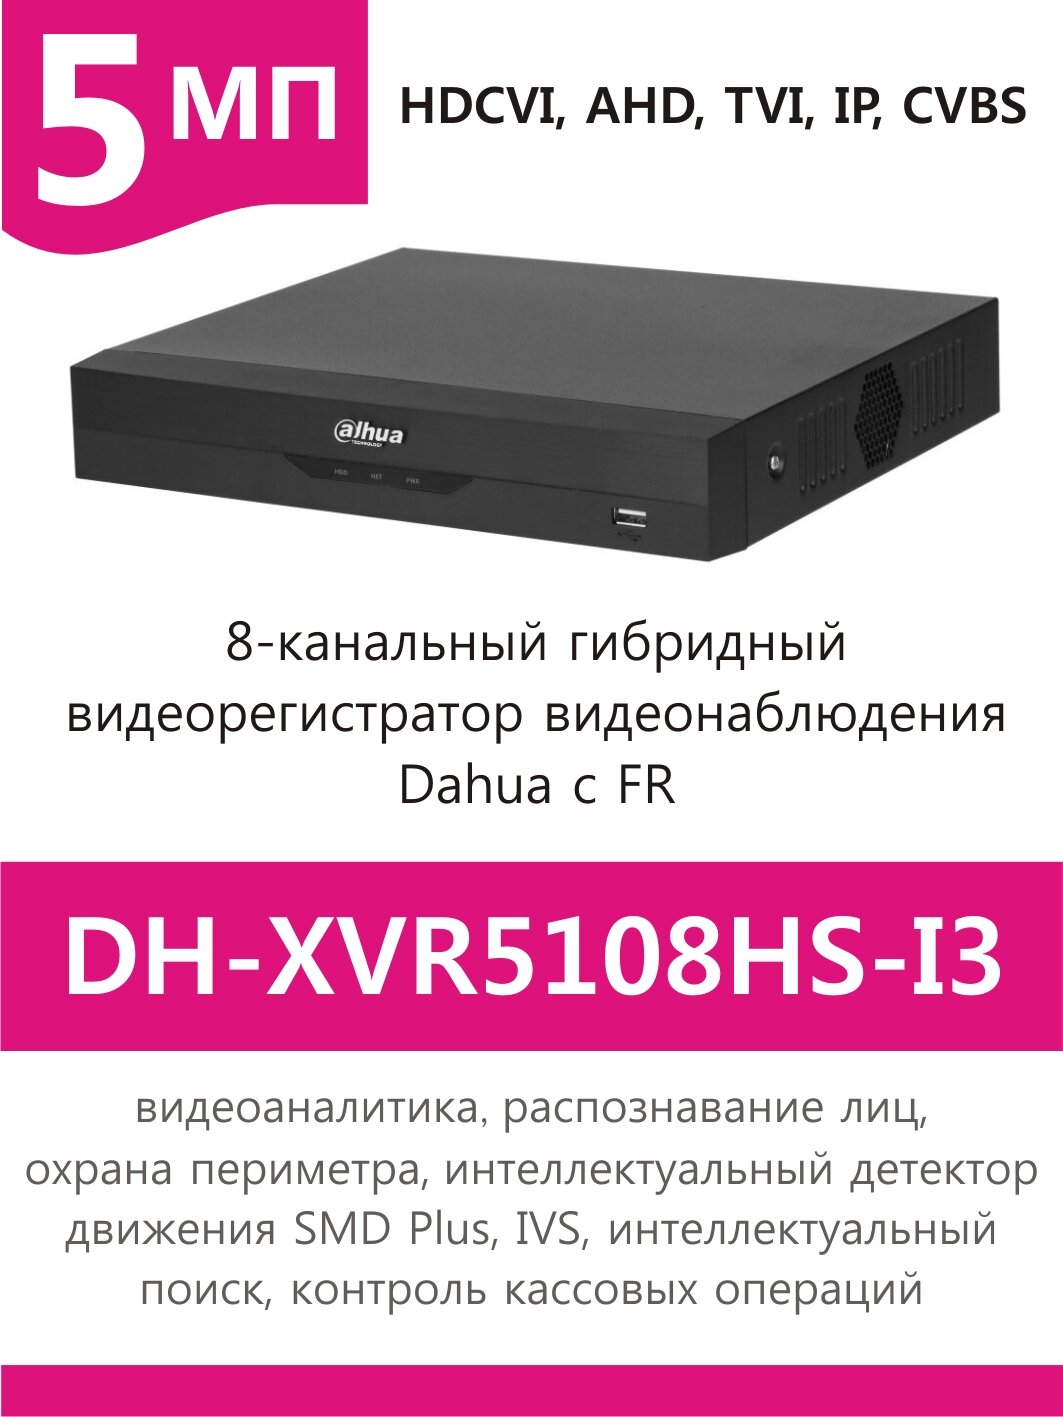 8-канальный видеорегистратор видеонаблюдения DAHUA DH-XVR5108HS-I3